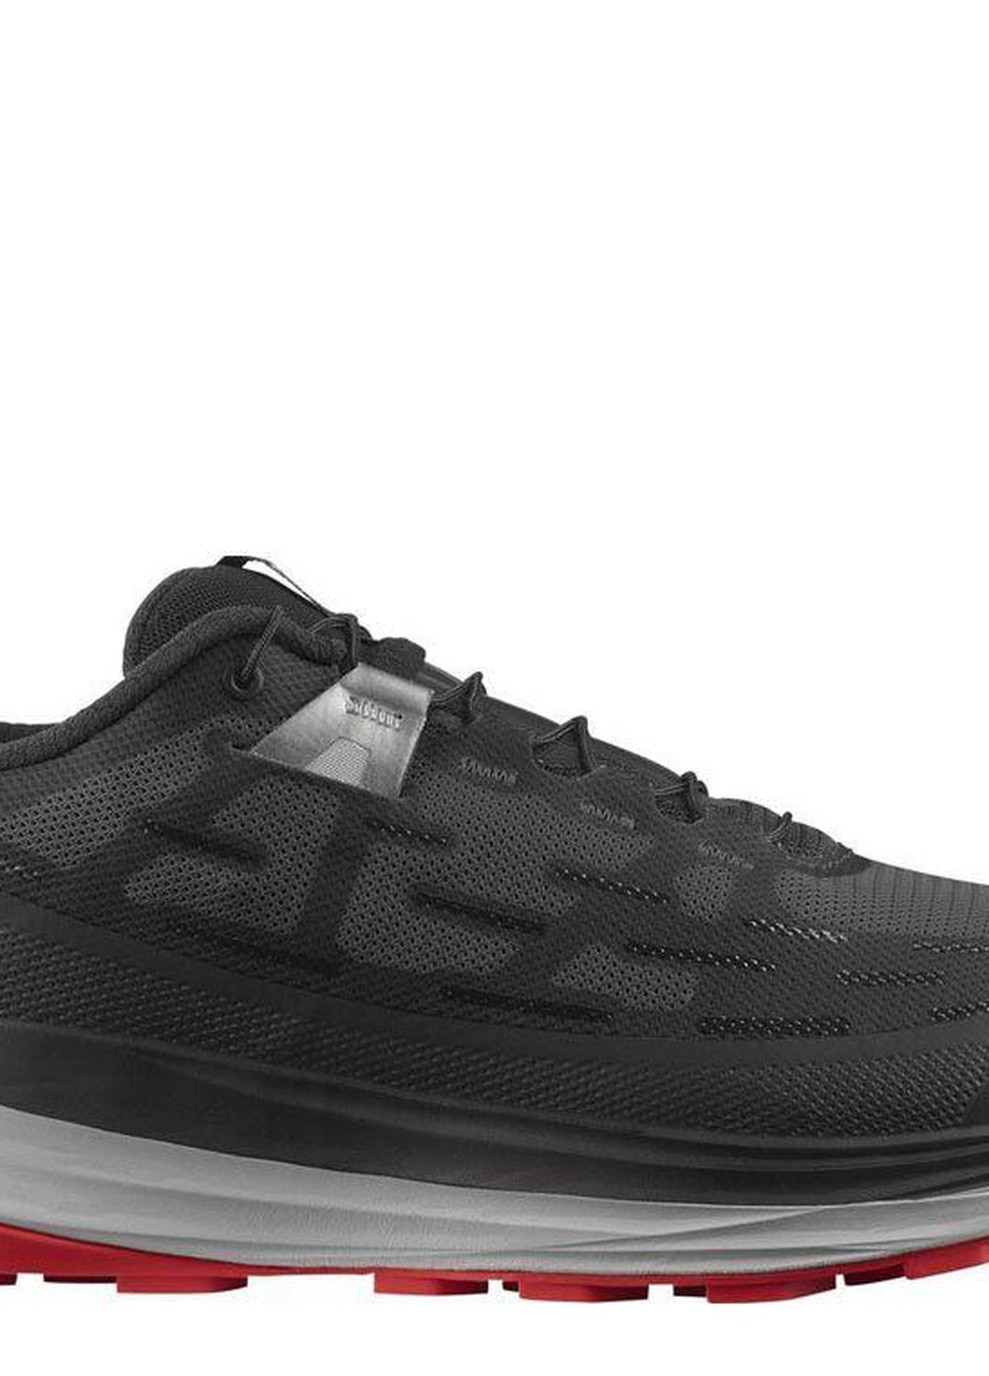 Чорні кросівки чоловічі ultra glide black Salomon кросівки